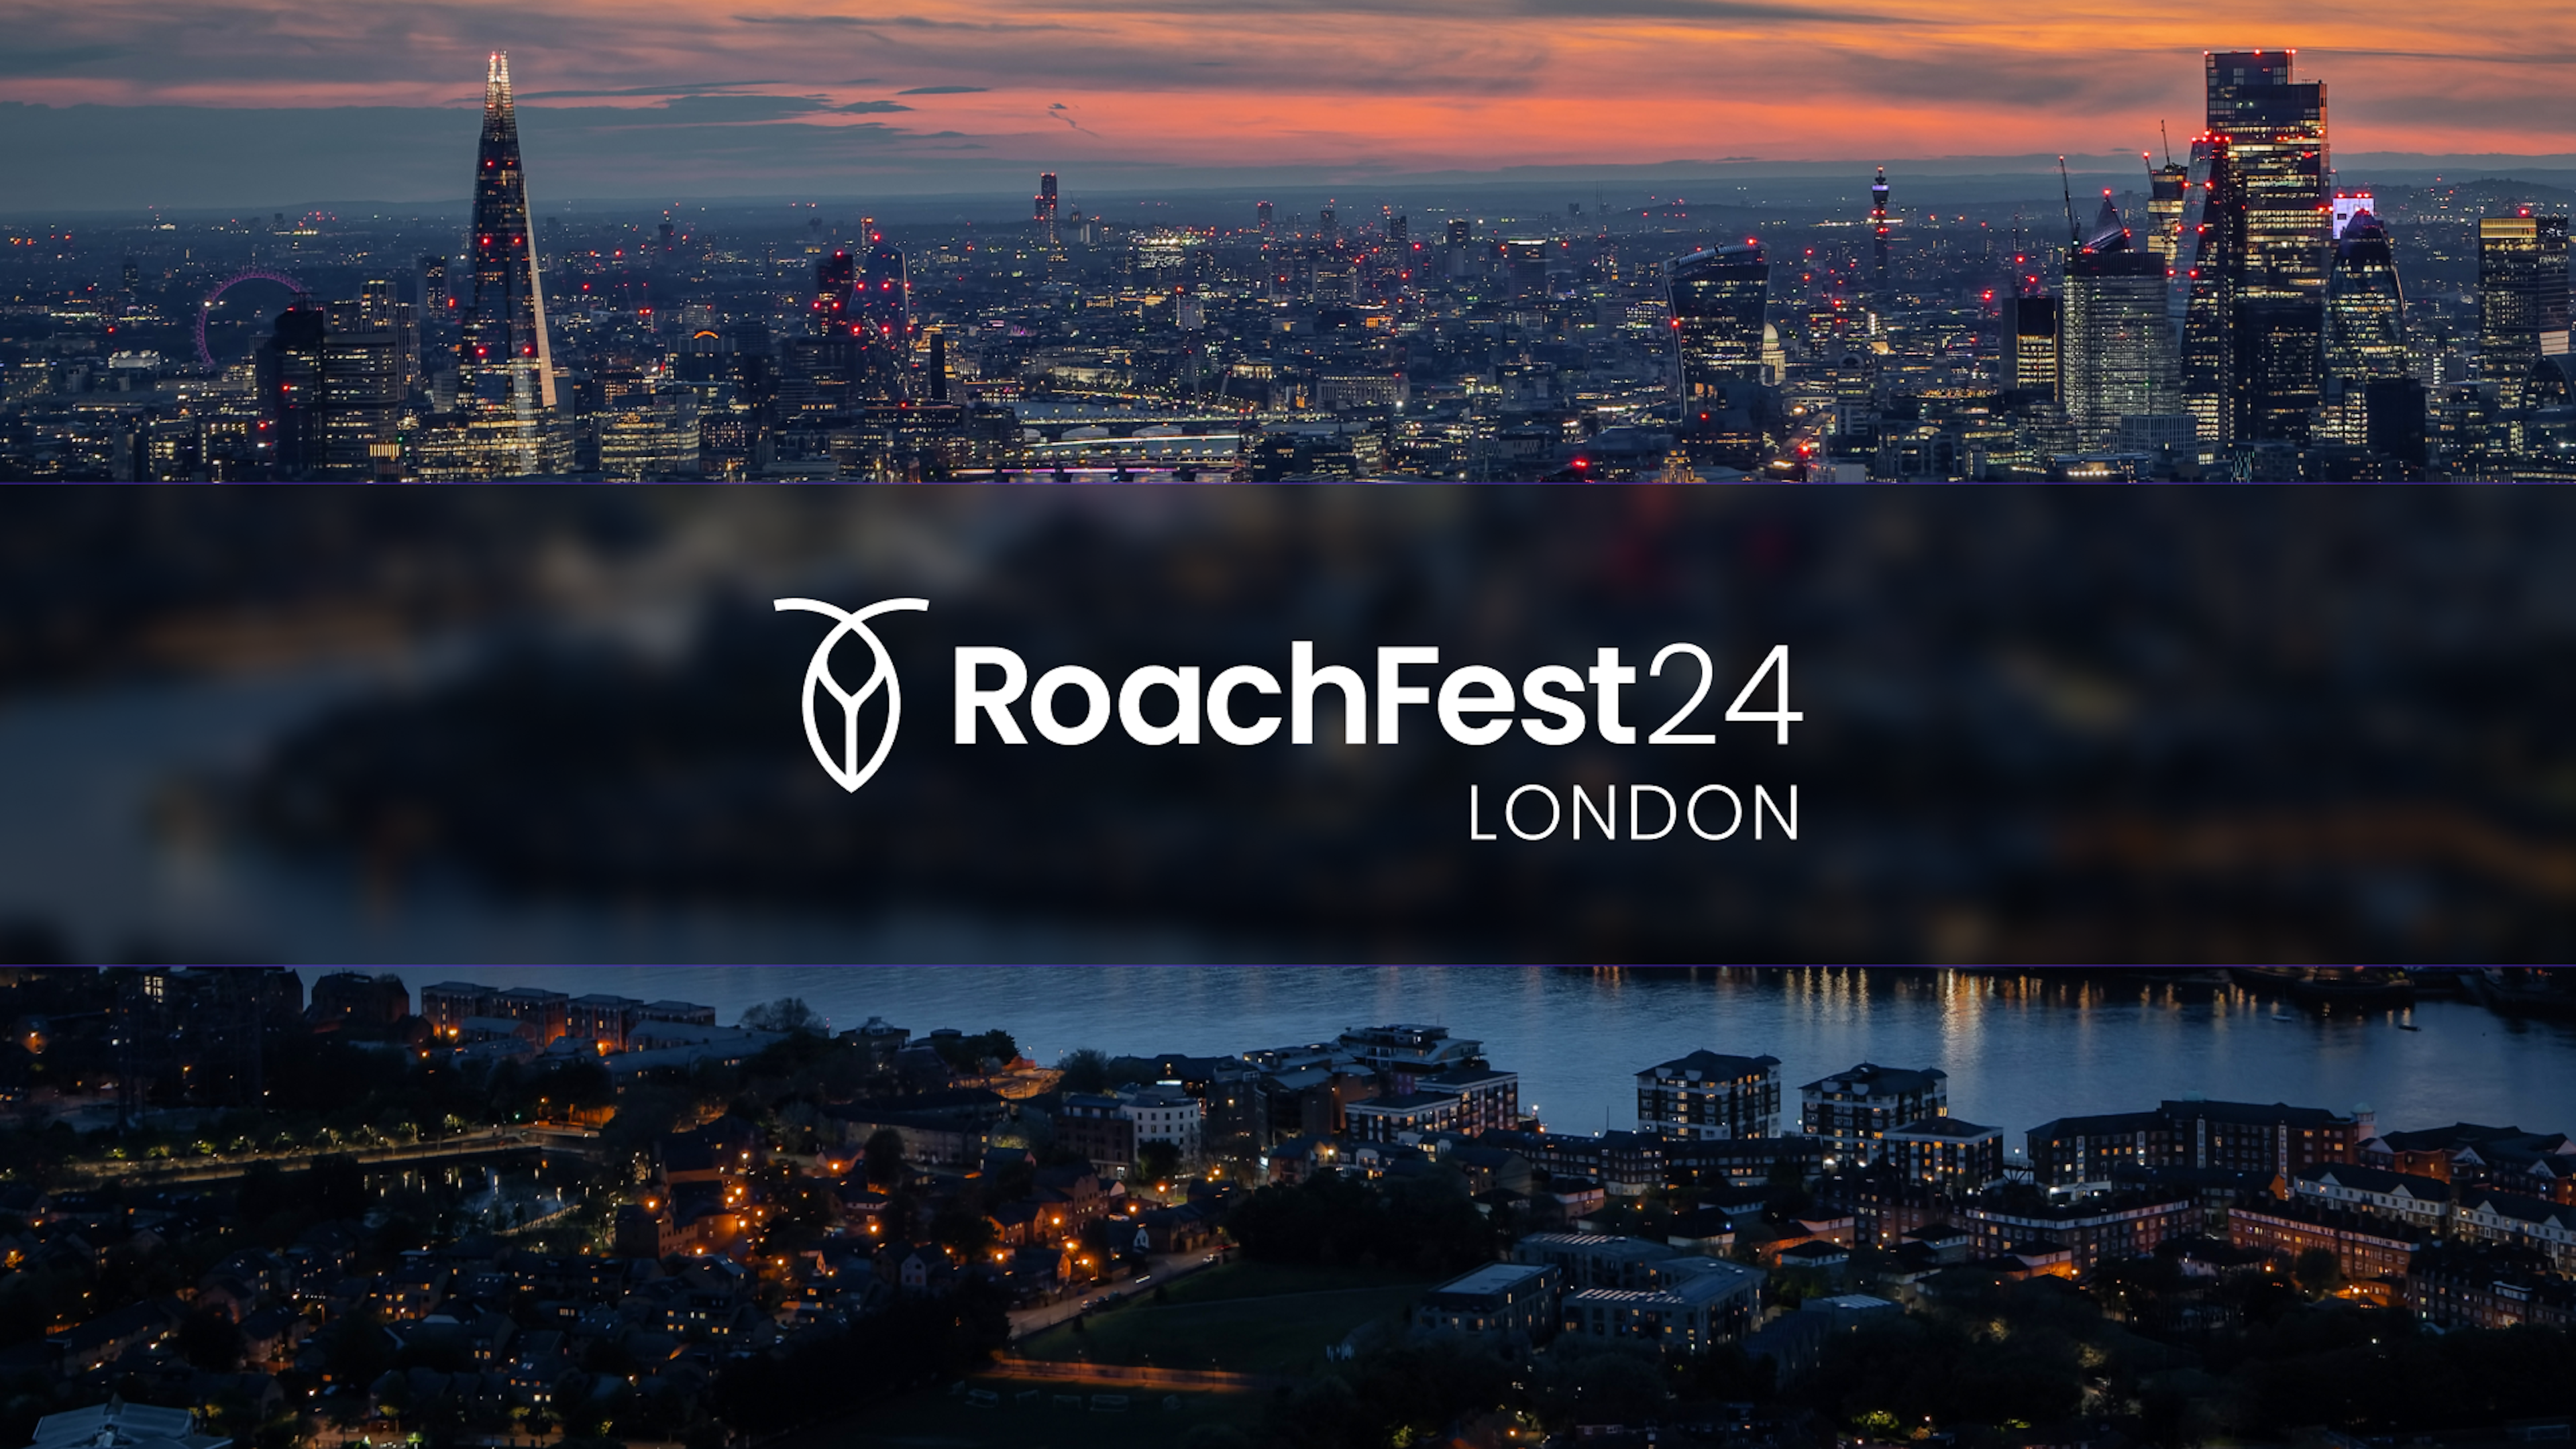 RoachFest 24 London 1920 x 1080 